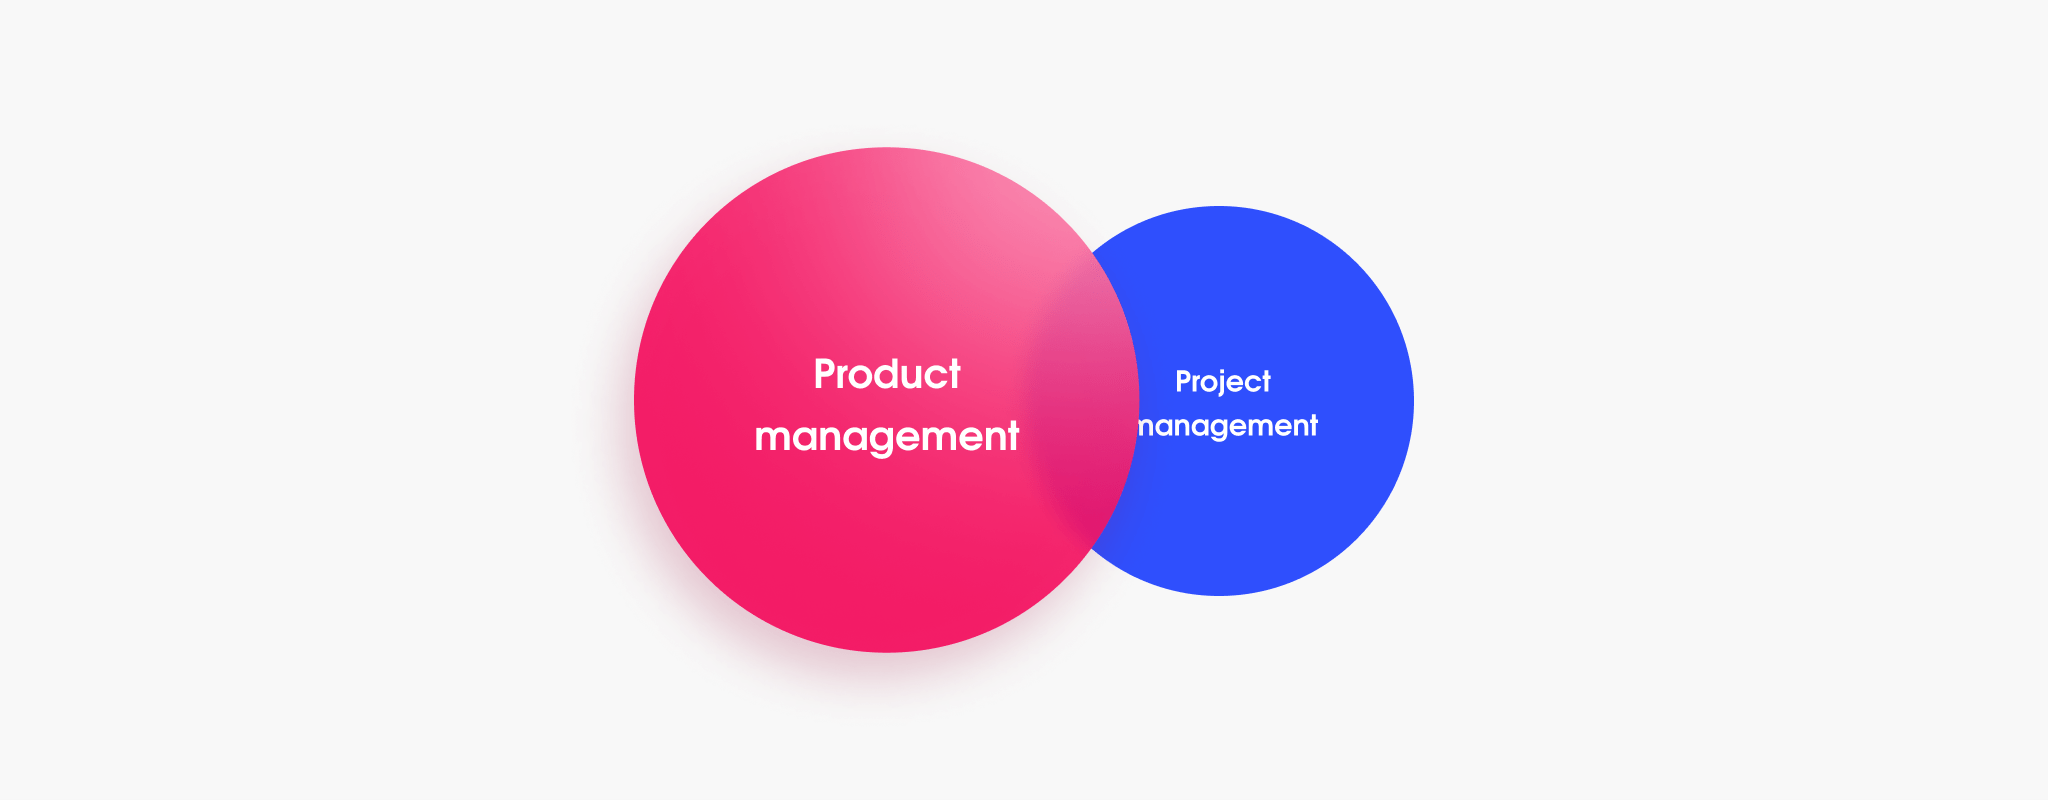 Product management, not project management